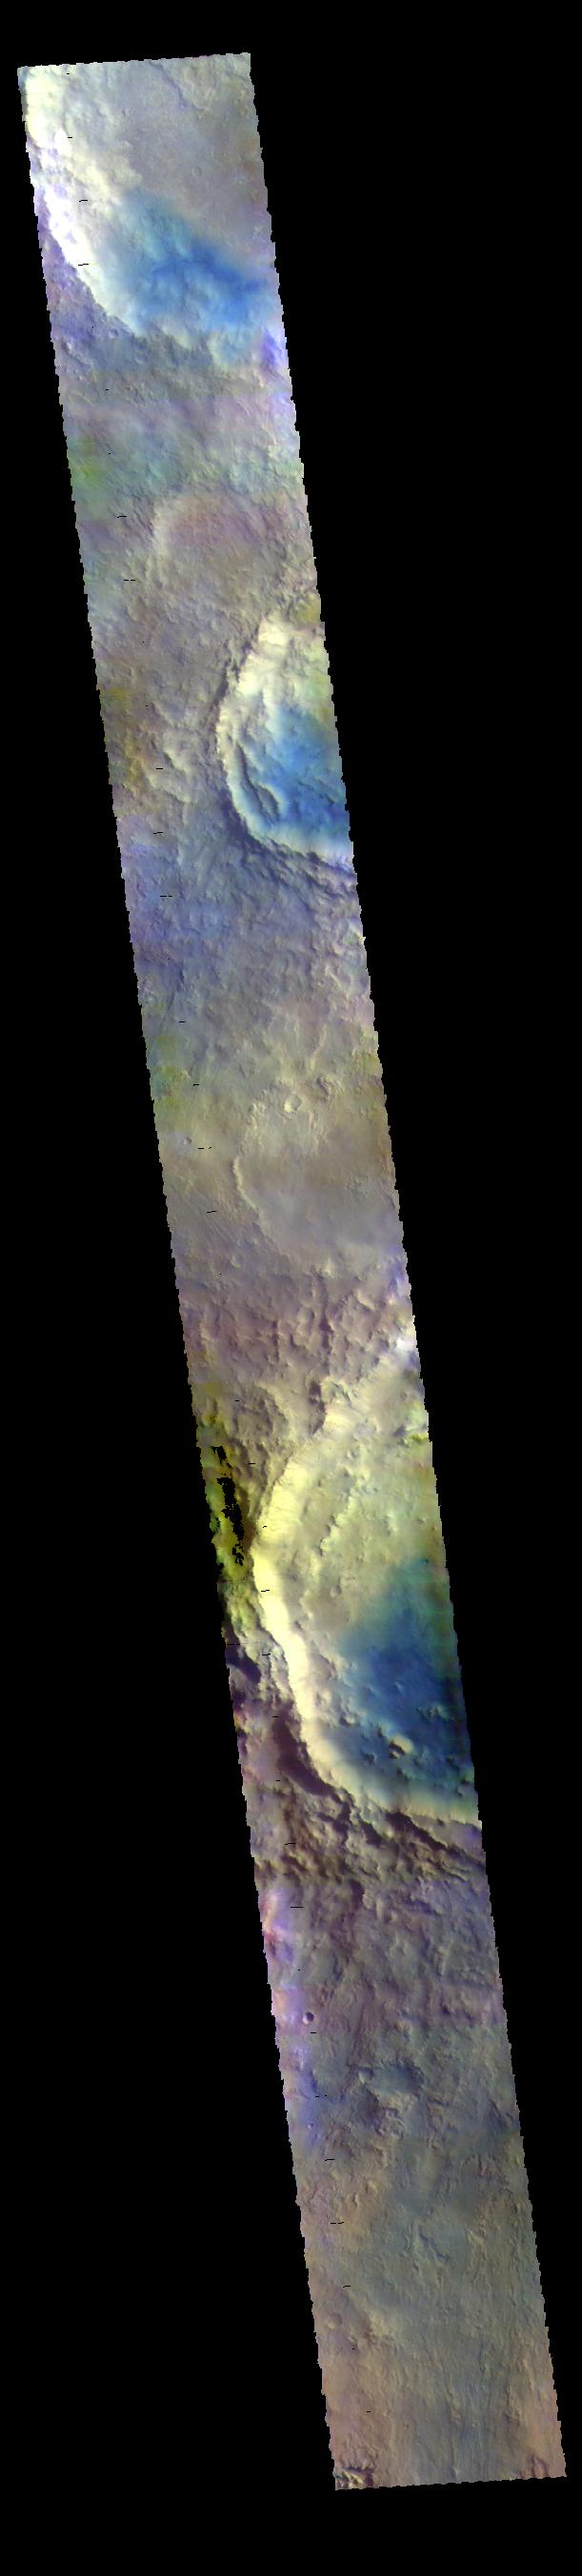 PIA23090: Arabia Terra Craters - False Color